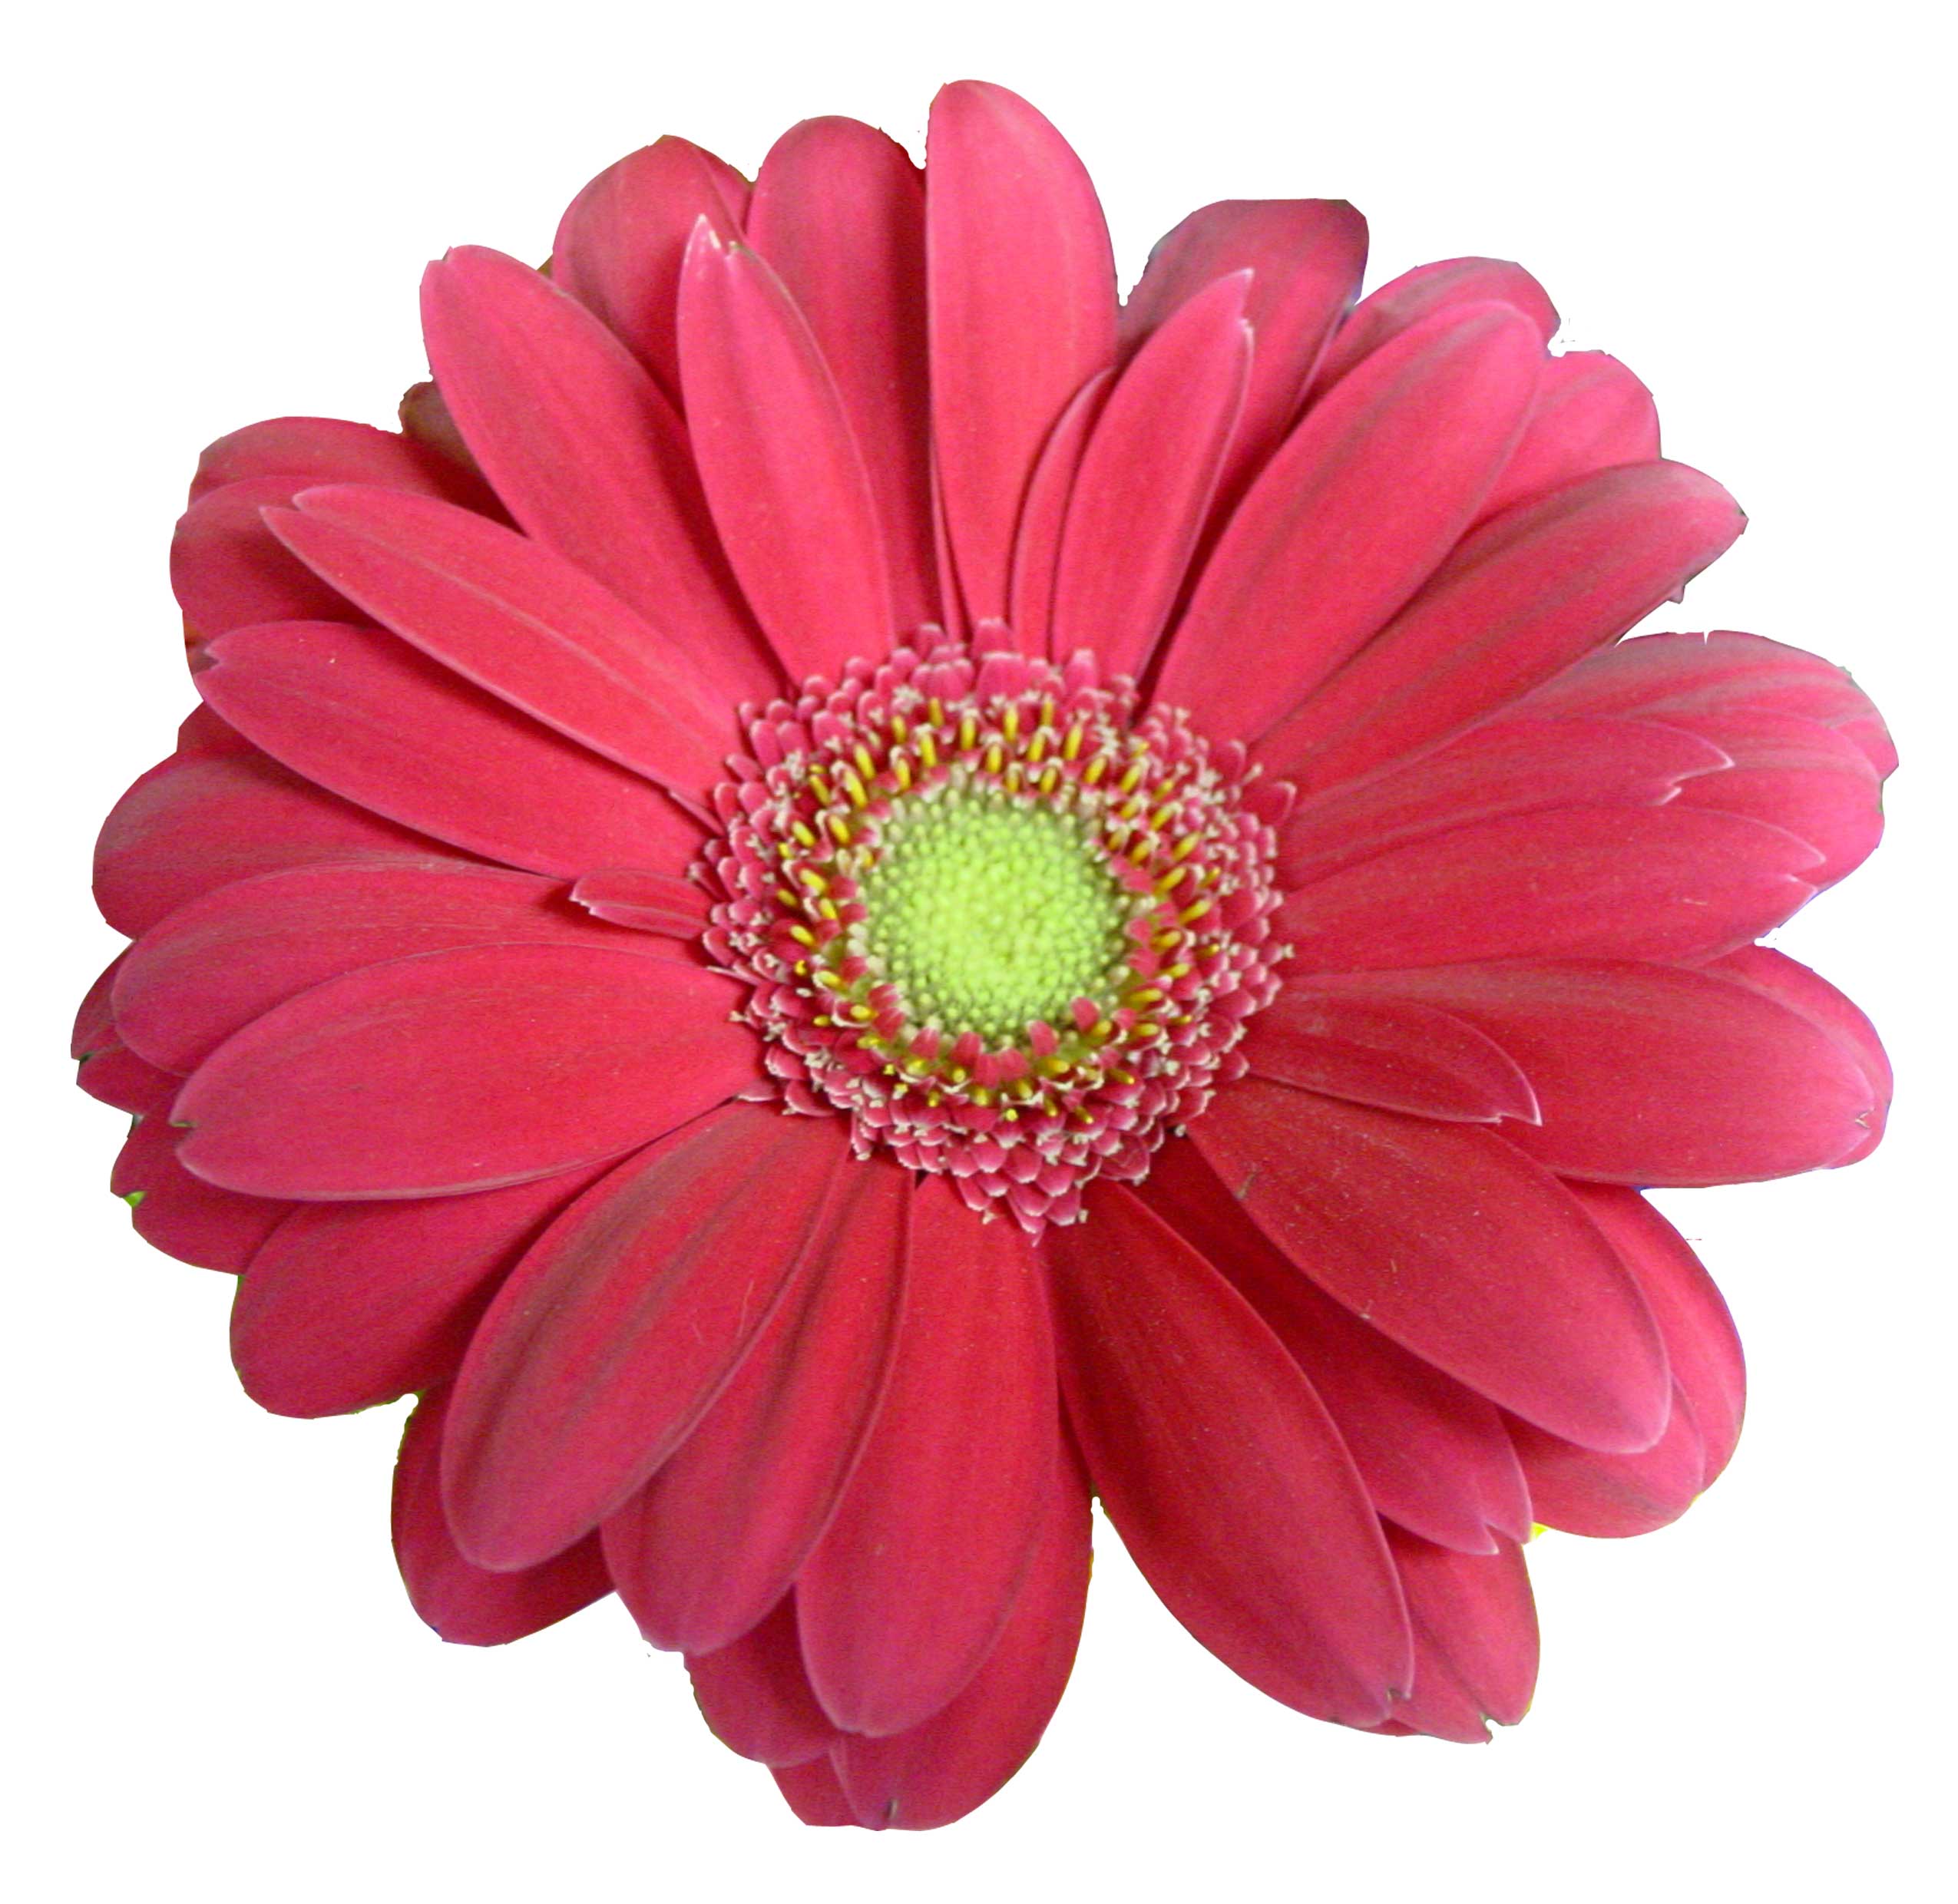 Flower clip art pink daisy clip art pink and black flower clip art